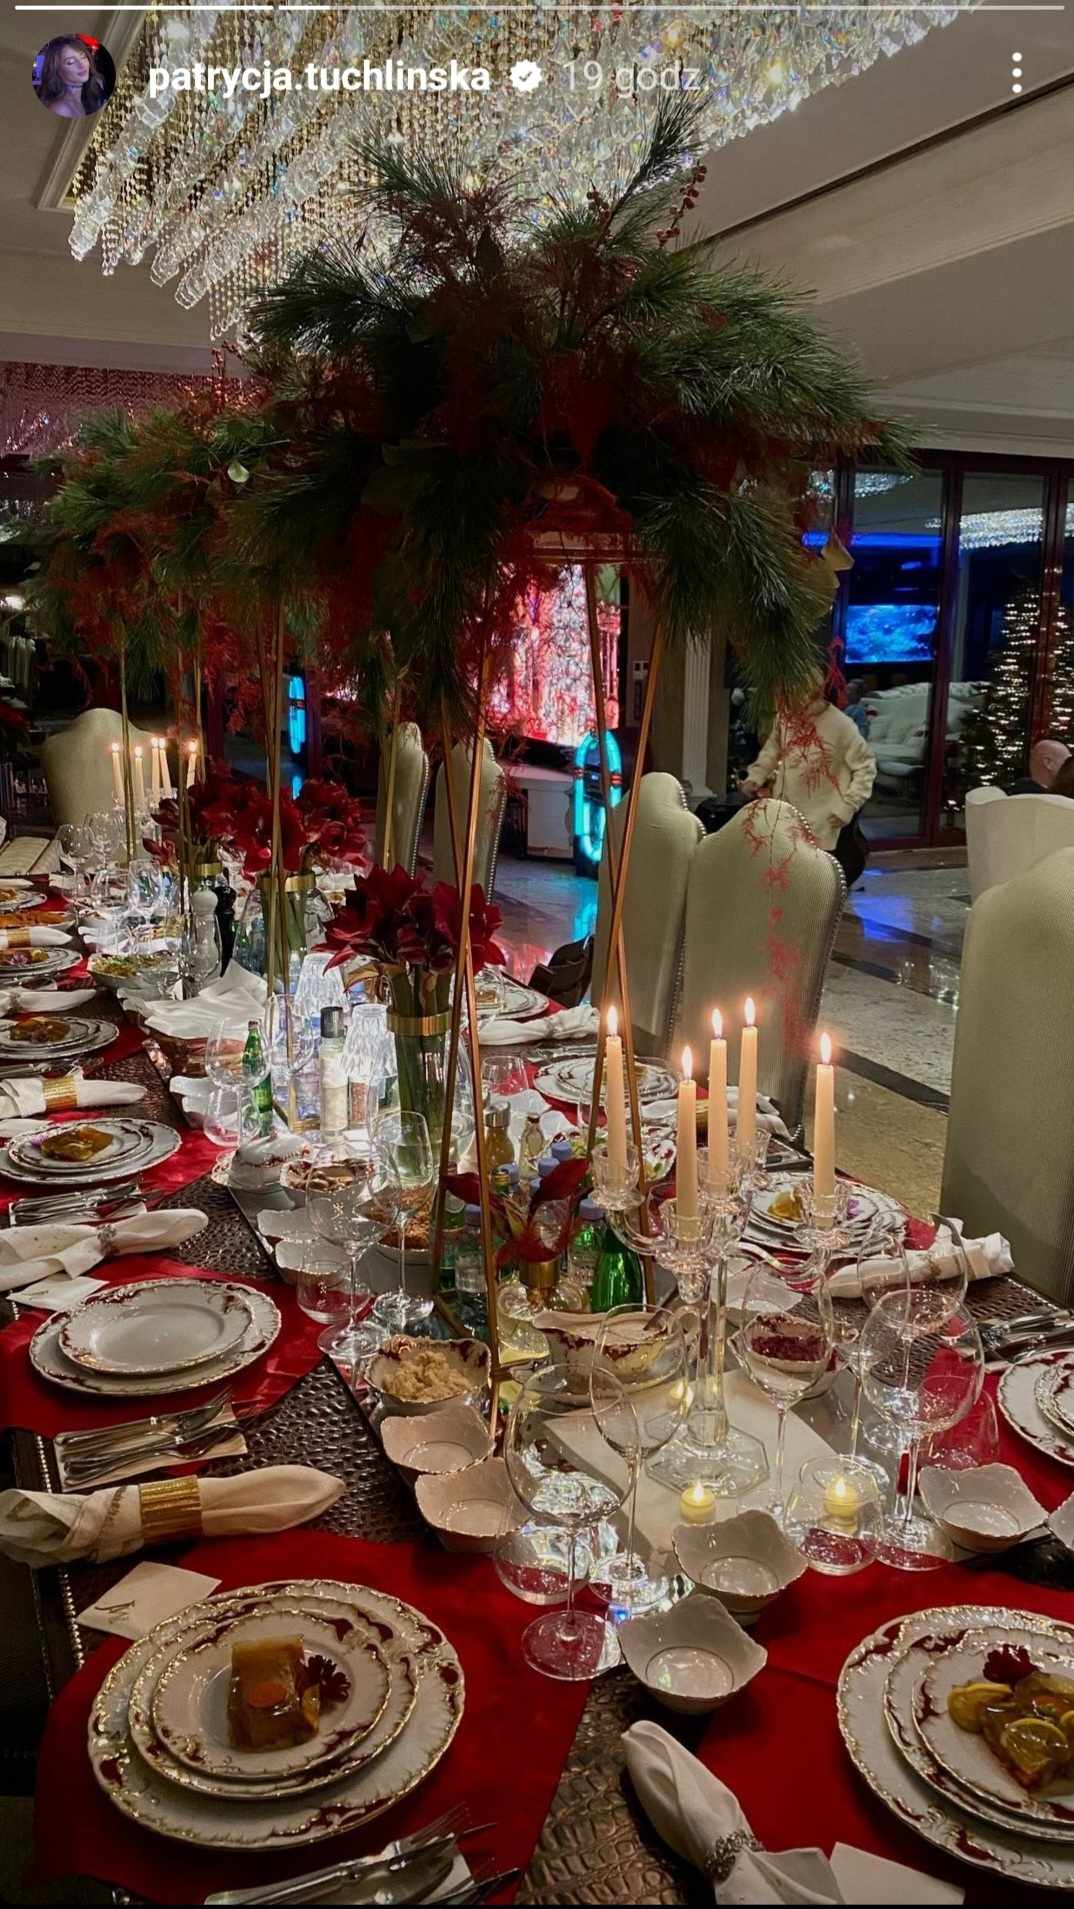 Patrycja Tuchlińska pokazała jak świętuje Boże Narodzenie, fot. Instagram/patrycja.tuchlinska